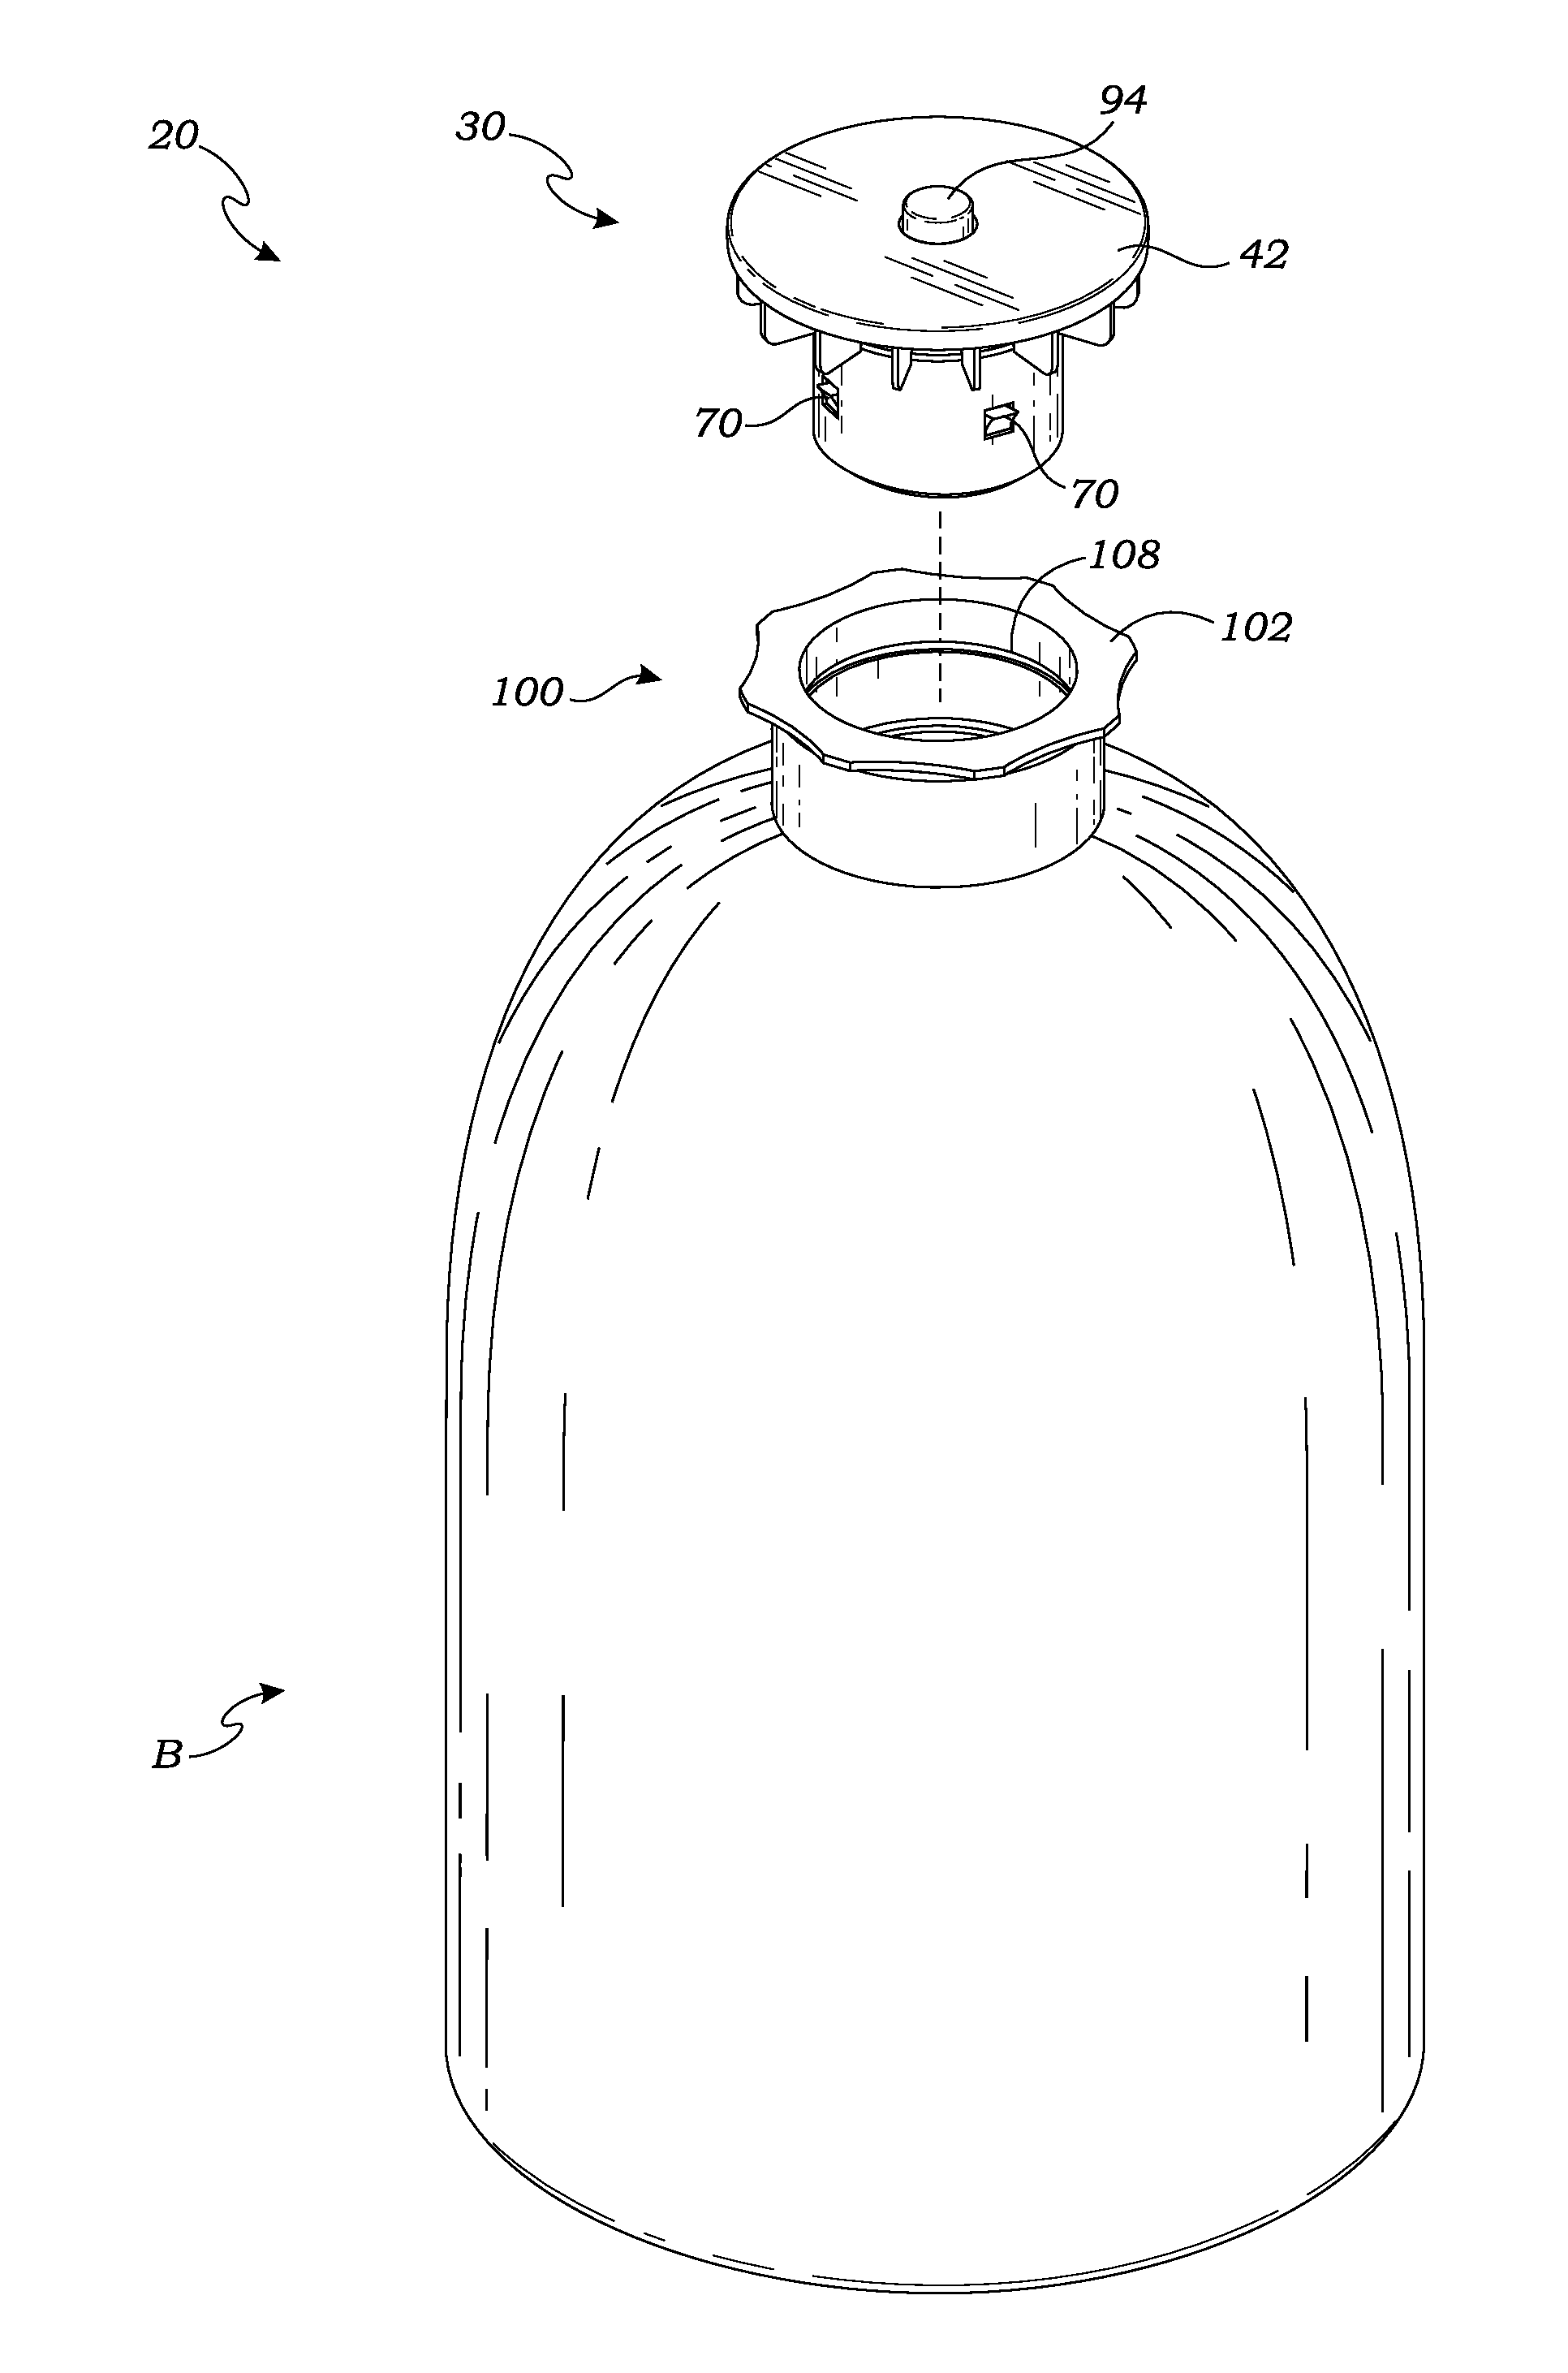 Bottle cap apparatus